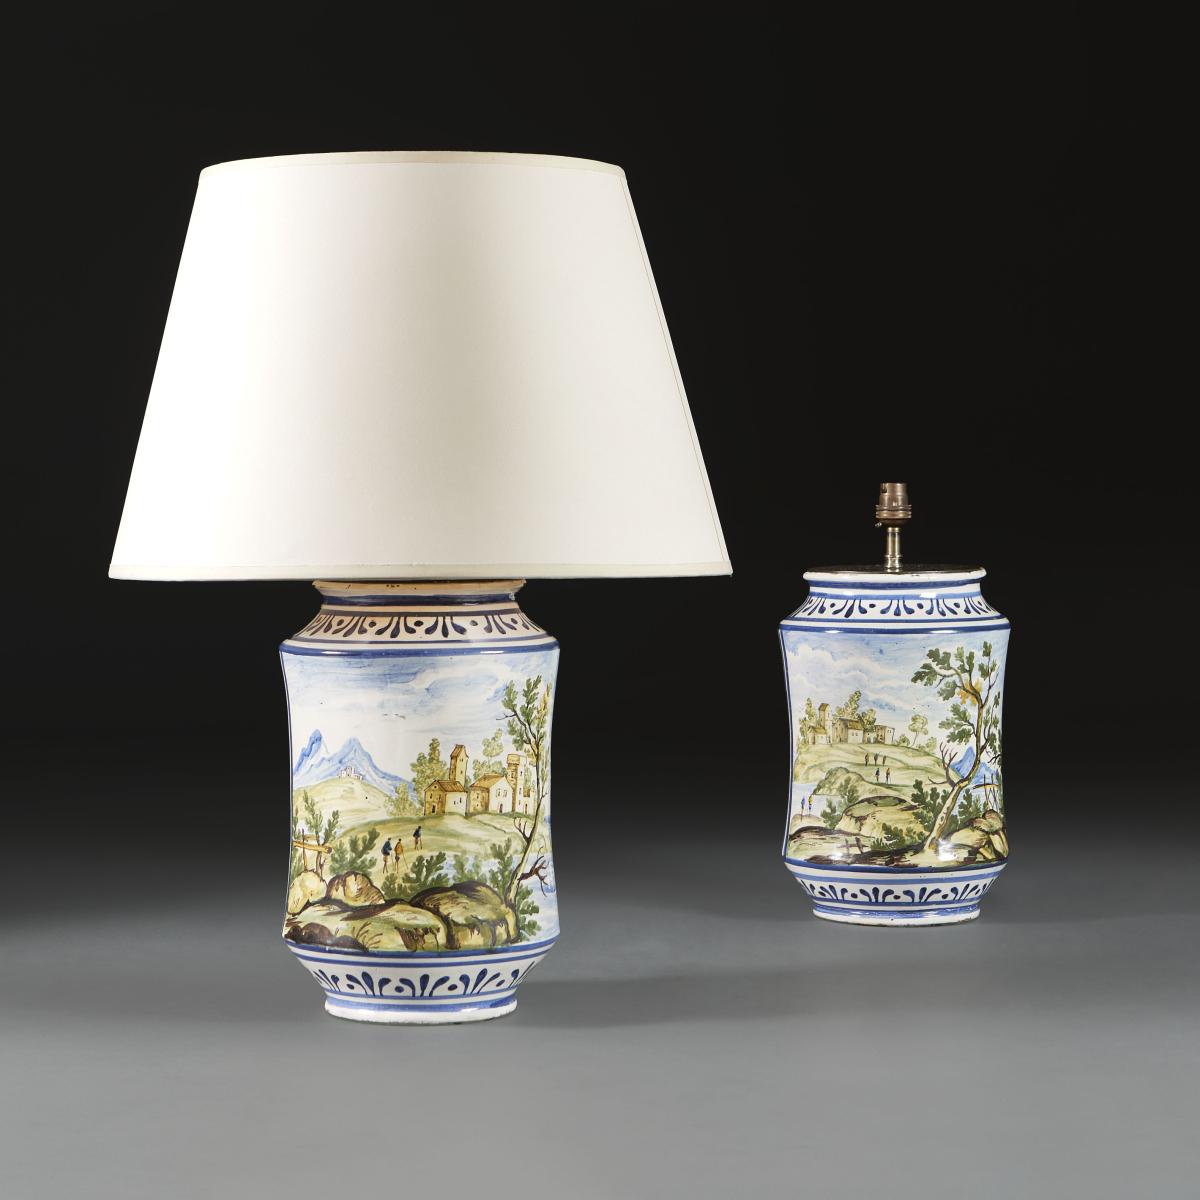 A Fine Pair of 19th Century Italian Albarello Vases